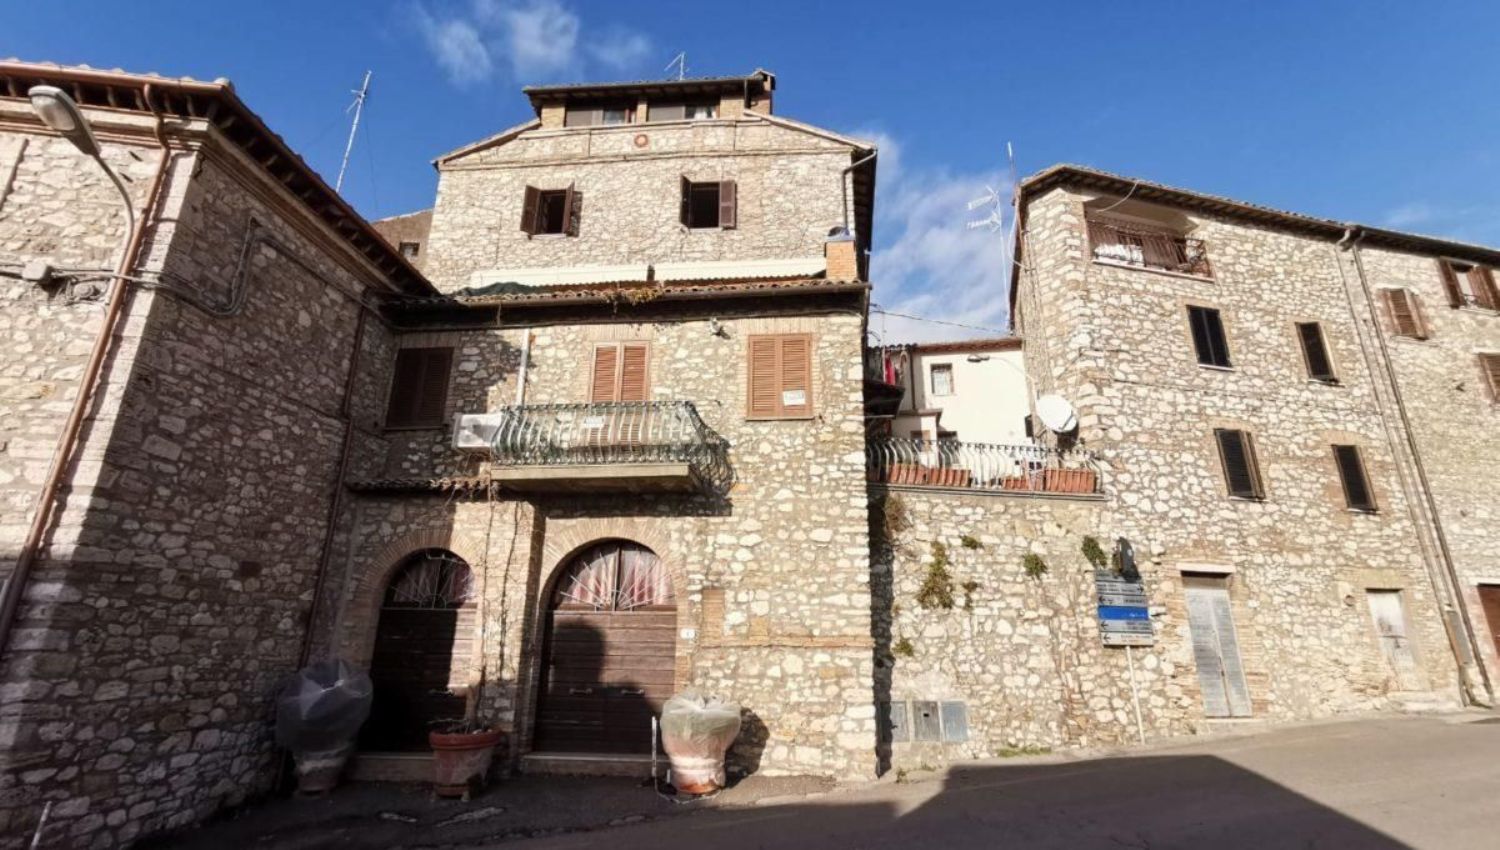 Immobile Commerciale in vendita a Montecchio, 9999 locali, prezzo € 43.000 | PortaleAgenzieImmobiliari.it